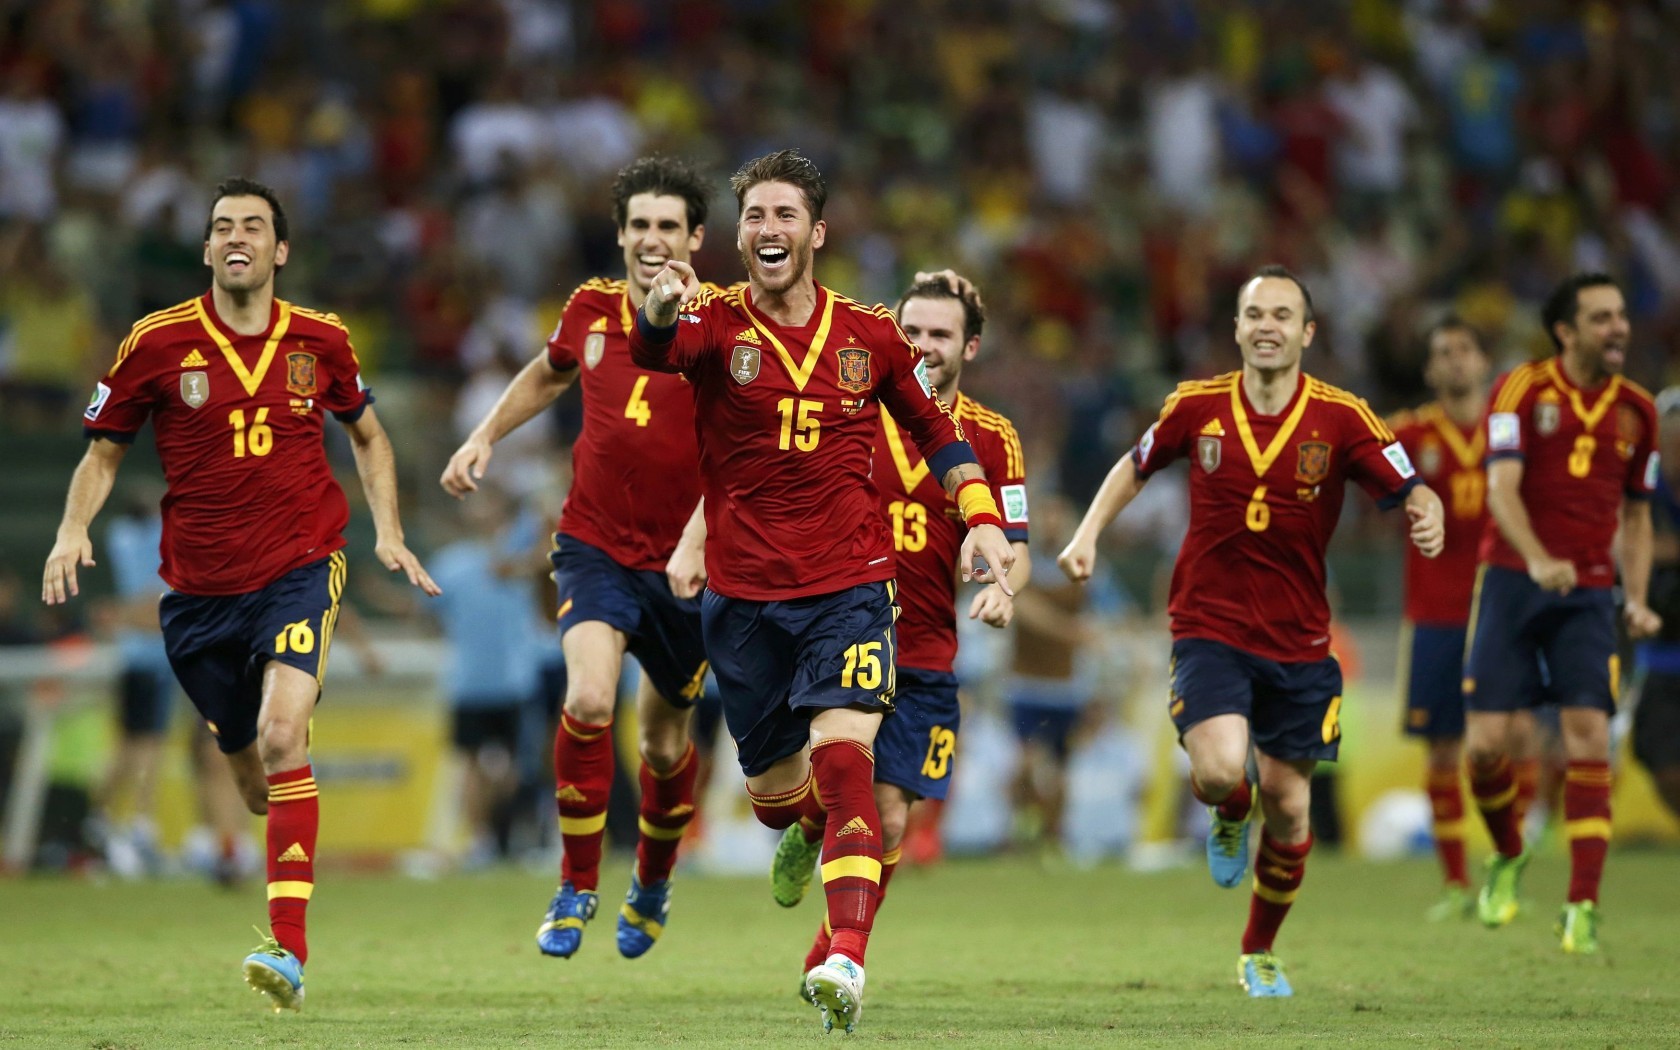 壁纸秀:西班牙国家队 - 懂球帝